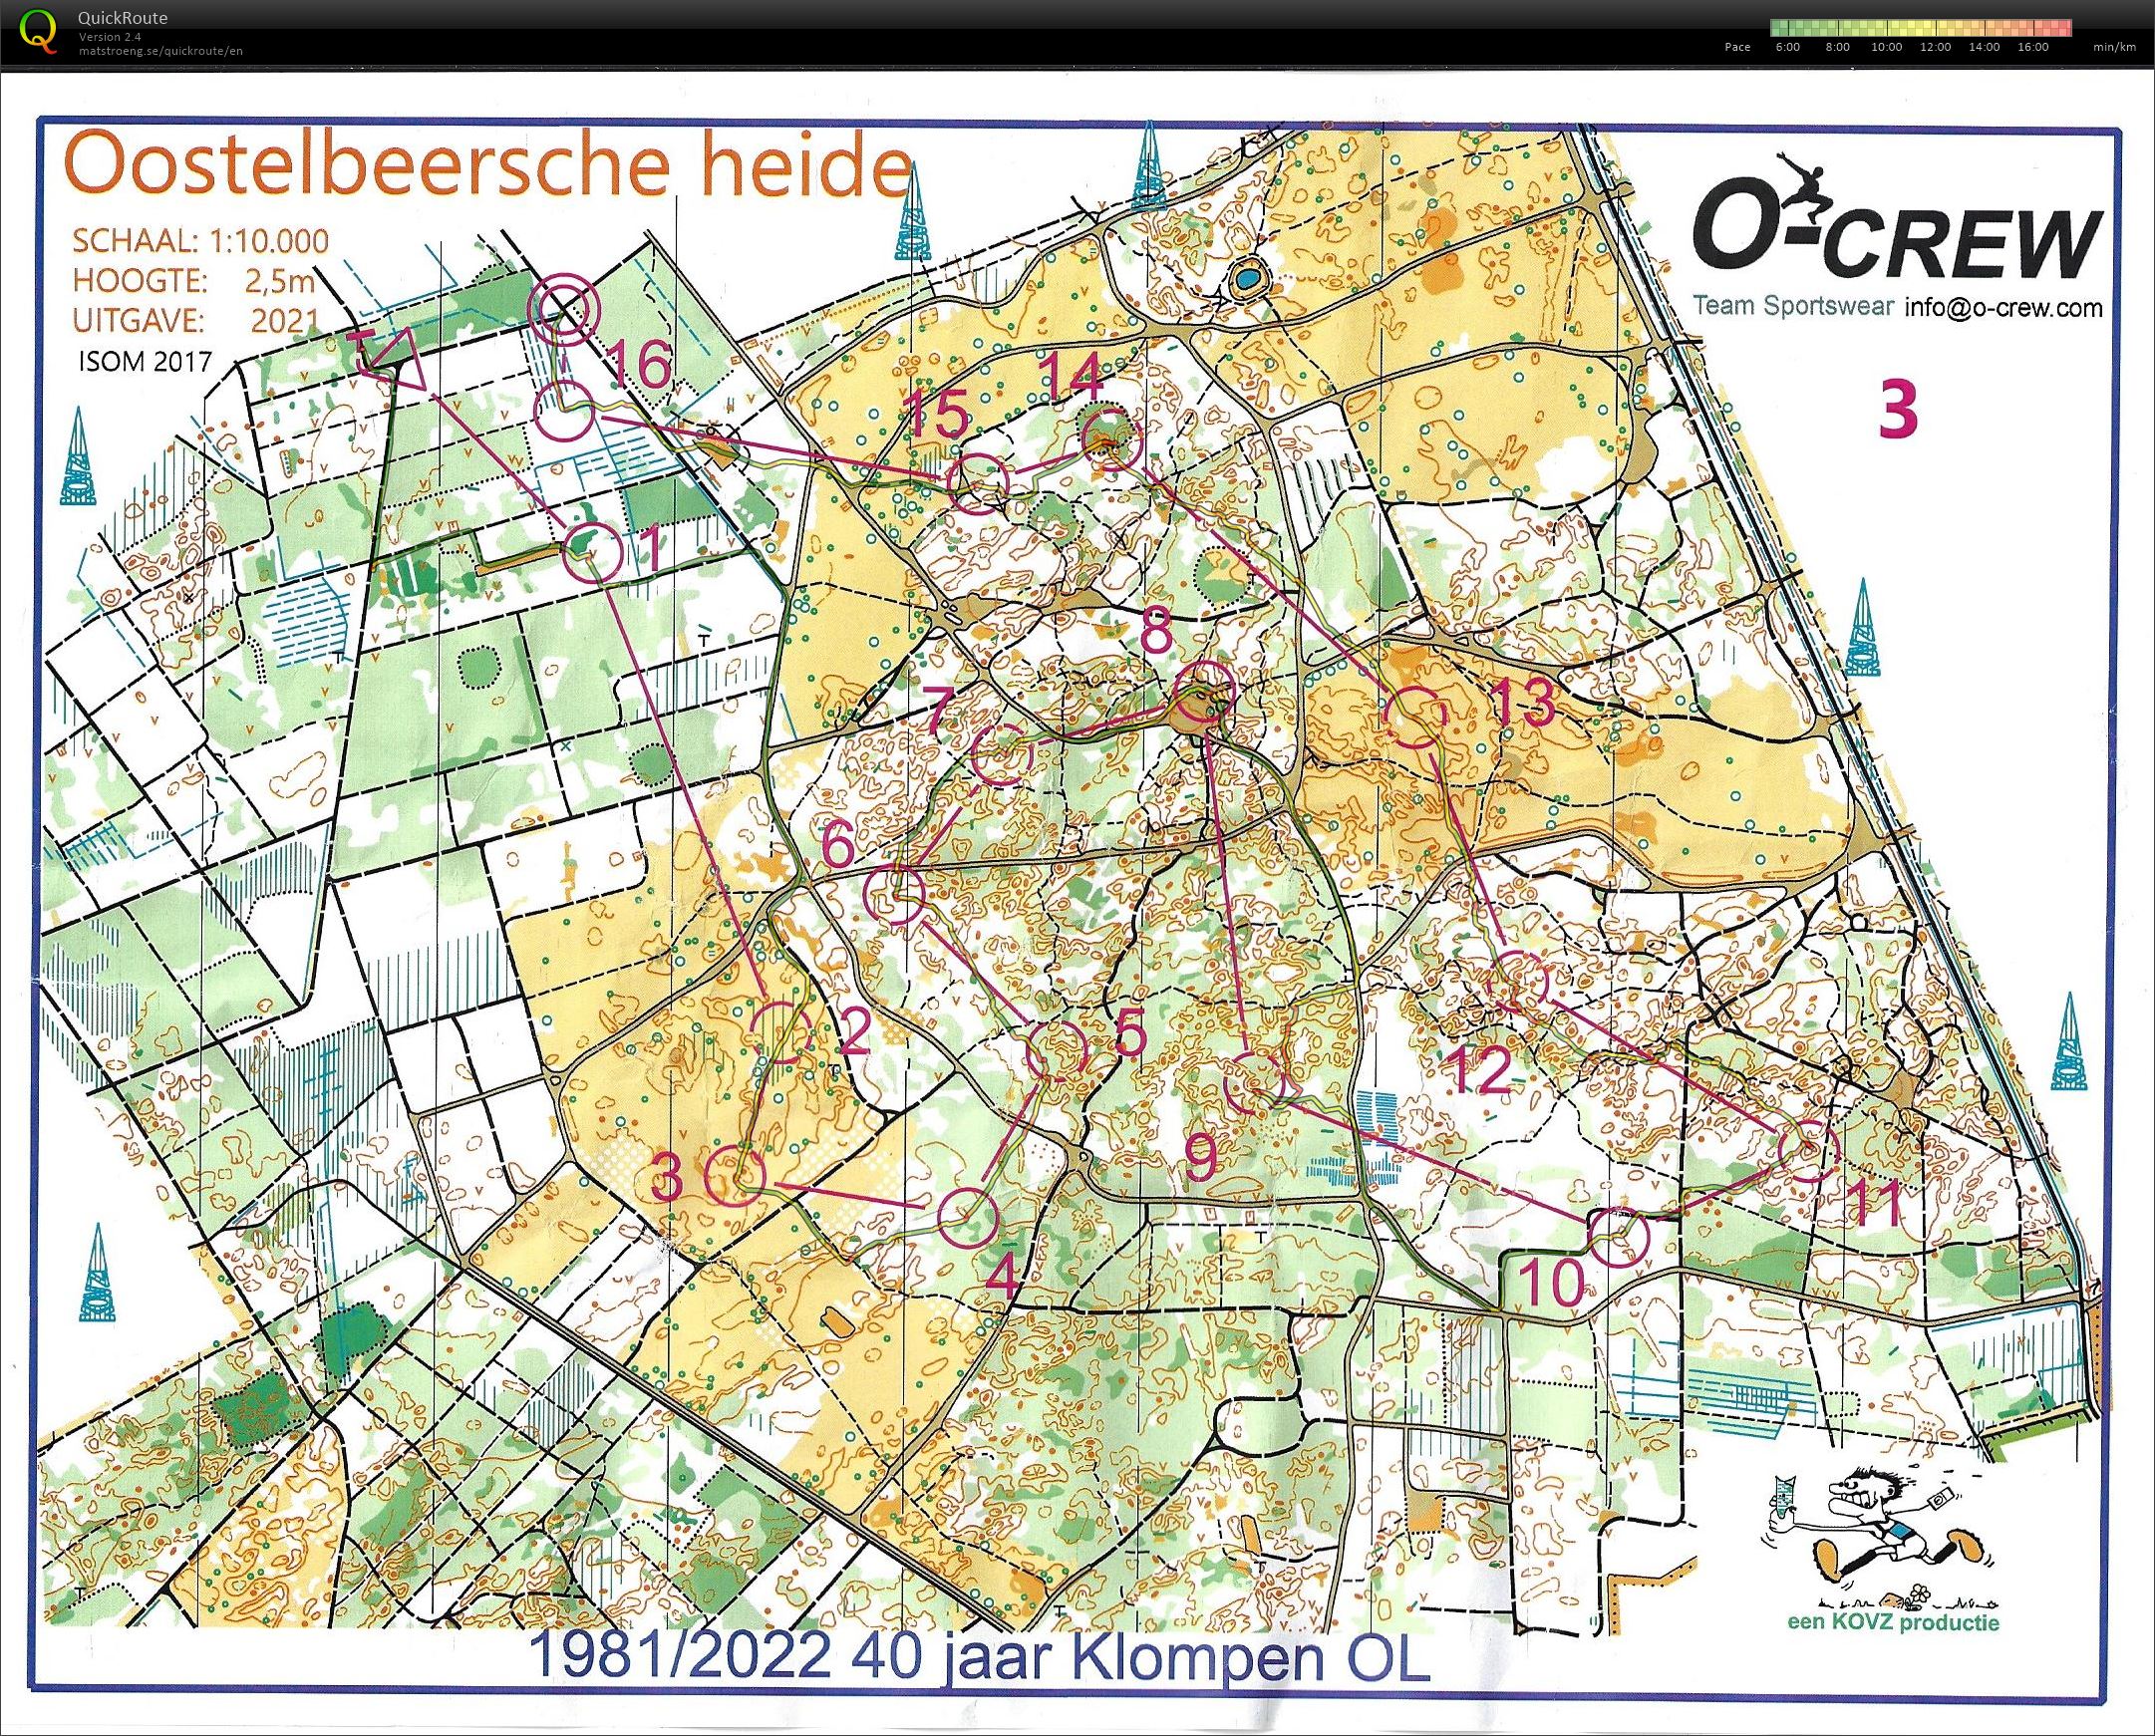 Oostelbeersche Heide (06/11/2022)